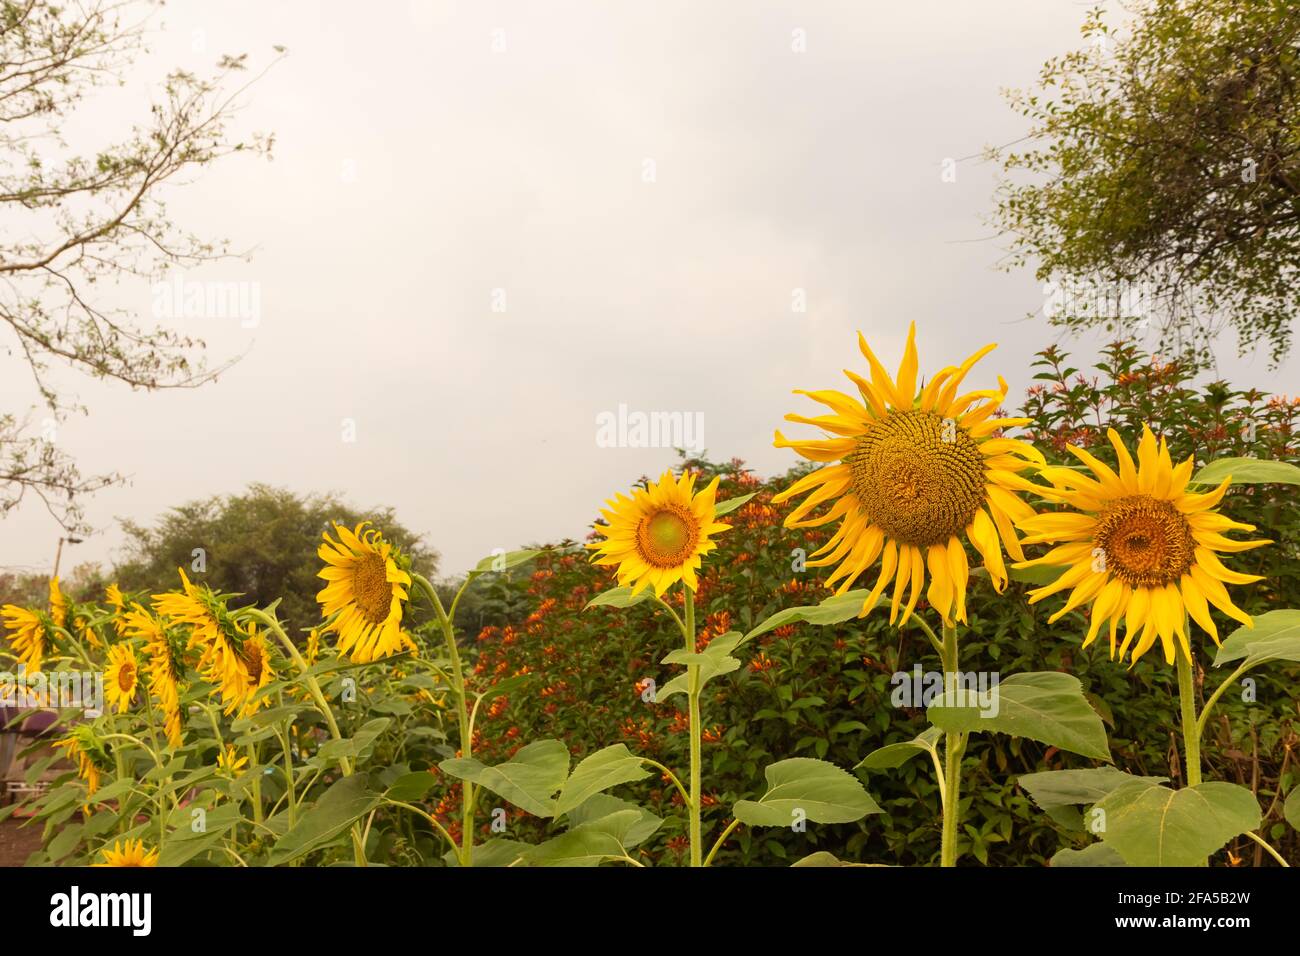 Blick auf die Sonnenblumenplantage mit Sonnenblumen, die in einer Reihe stehen Und blüht Stockfoto